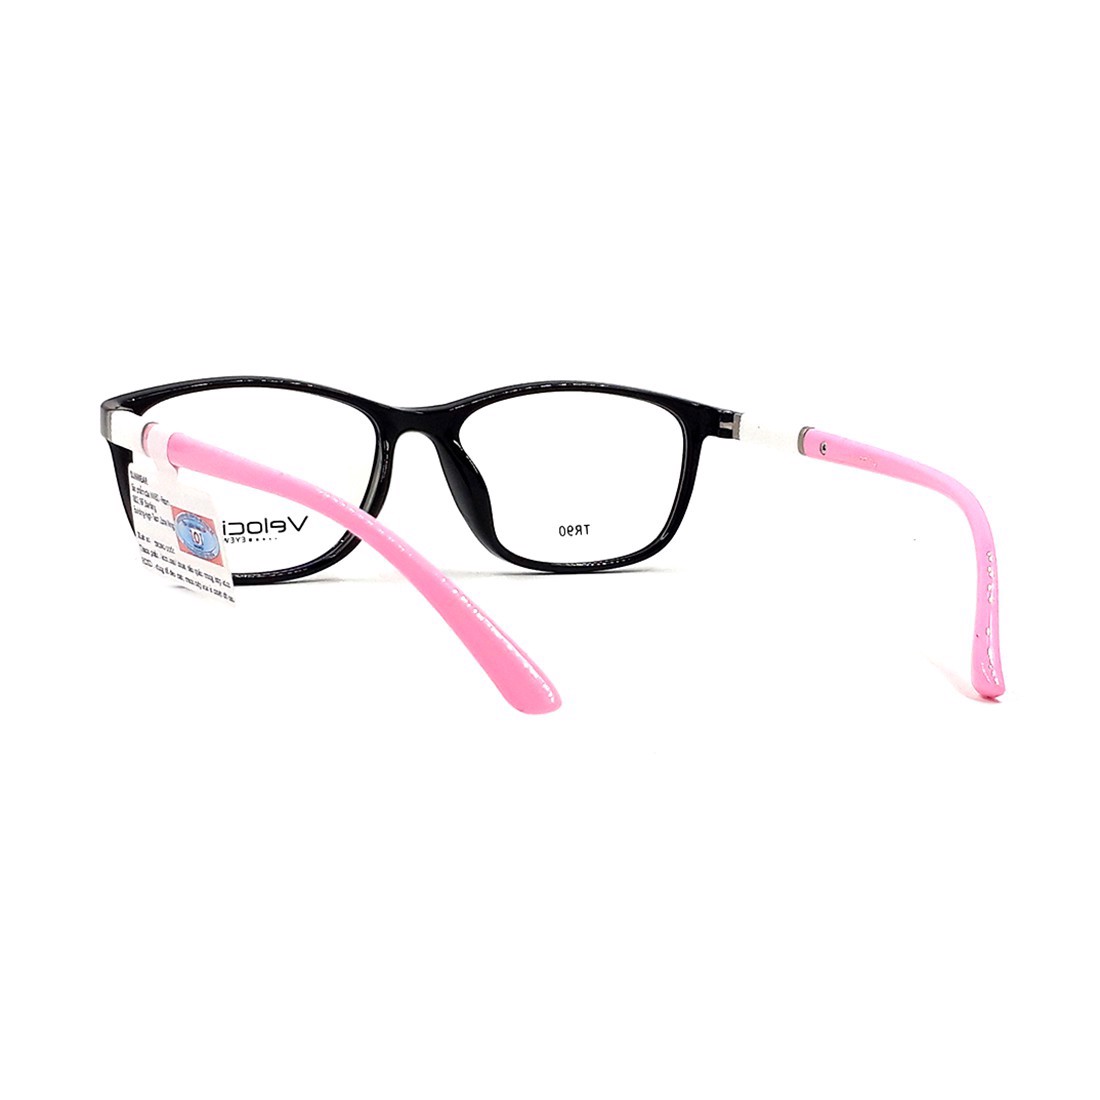 Gọng kính, mắt kính chính hãng Velocity VL36461 805 - Tặng 1 khăn và nước lau kính - khăn màu ngẫu nhiên